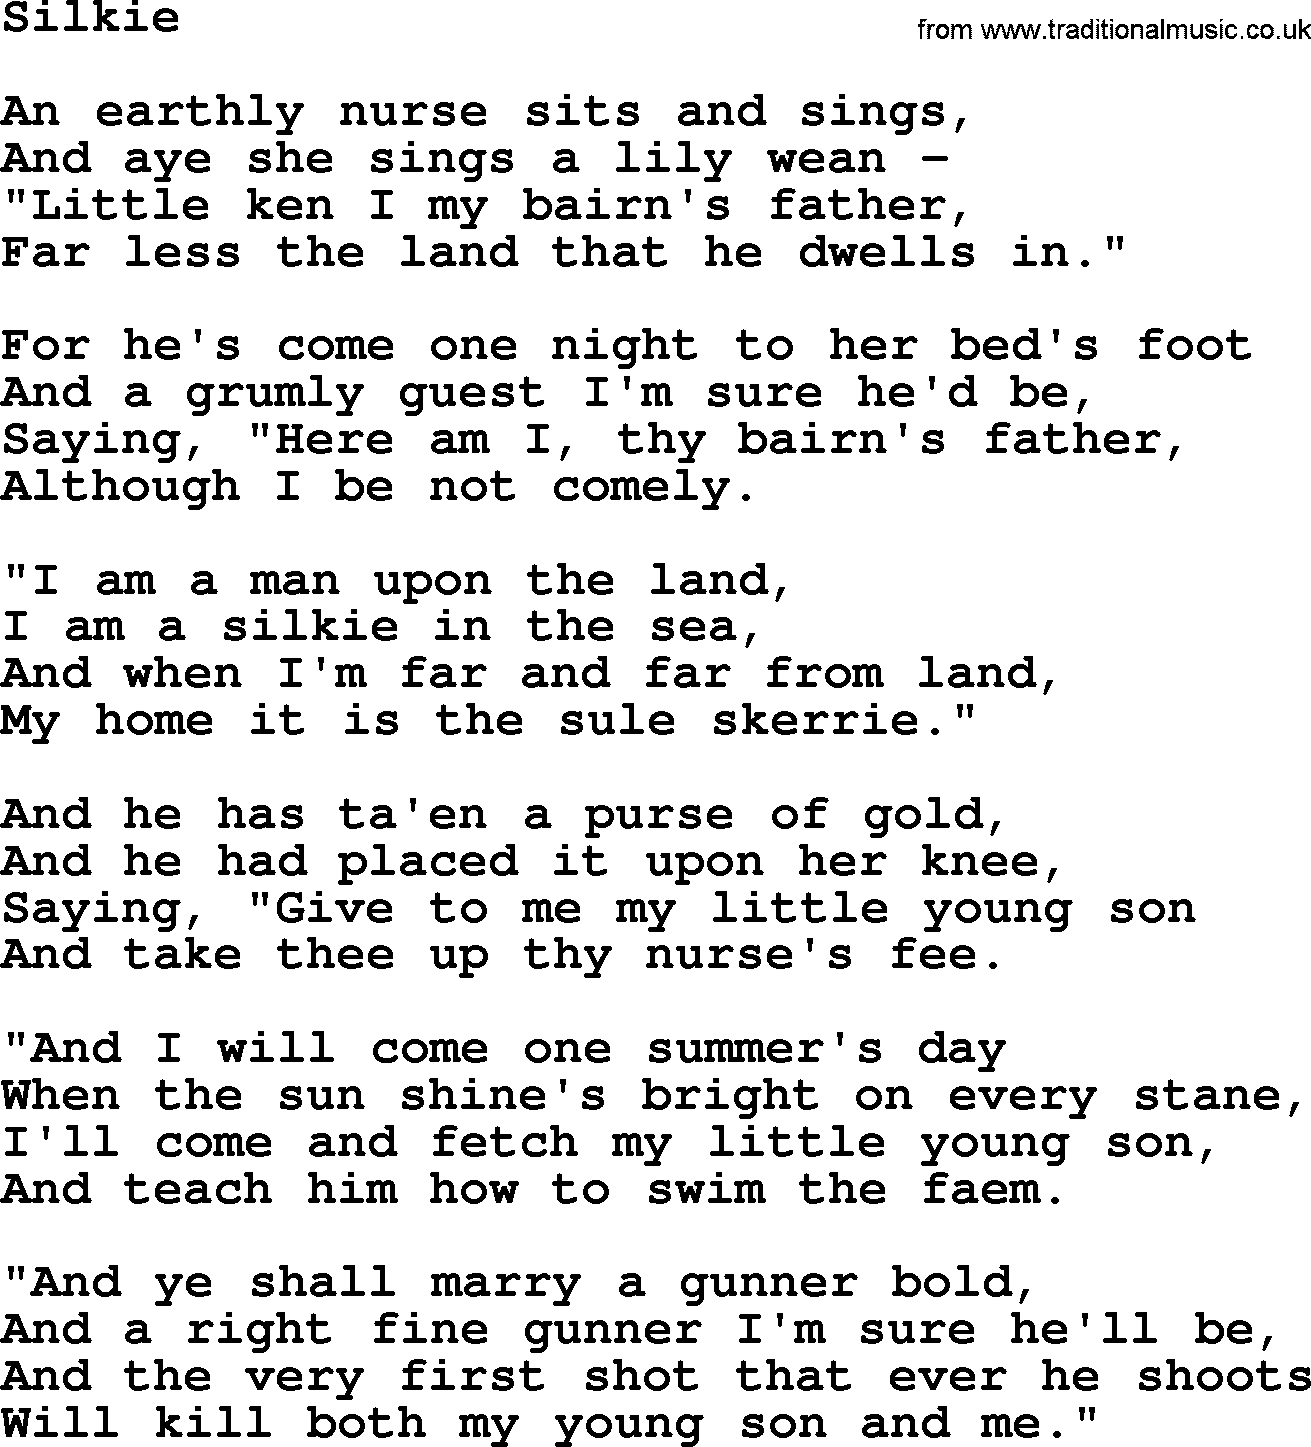 Joan Baez song Silkie, lyrics